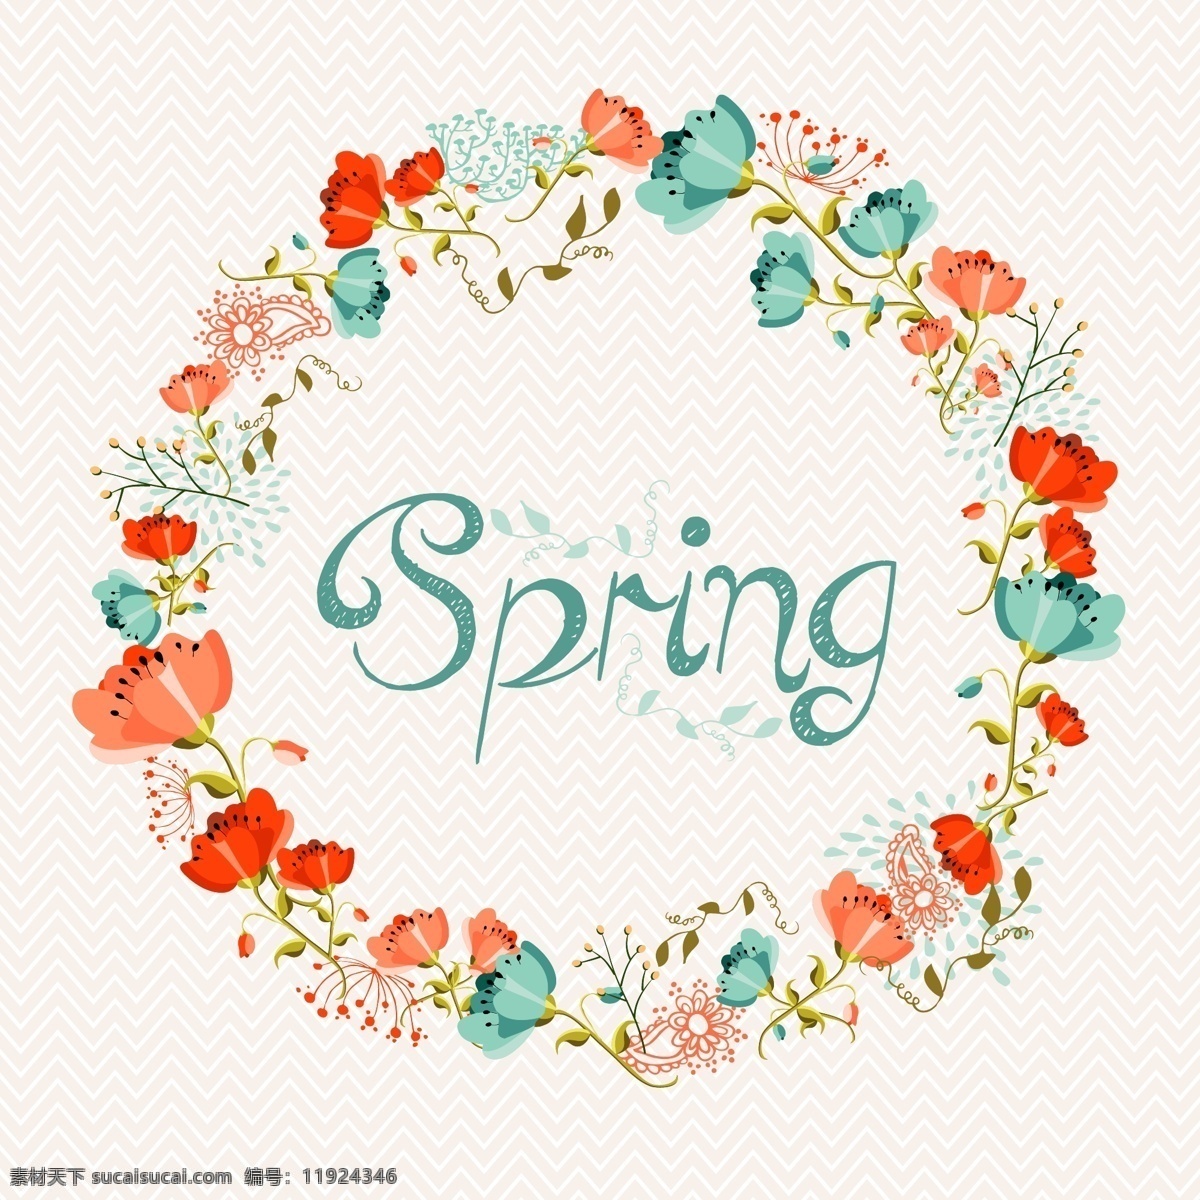 春季 水彩 花环 矢量 花朵 韩国 春 夏天 底纹边框 花边花纹